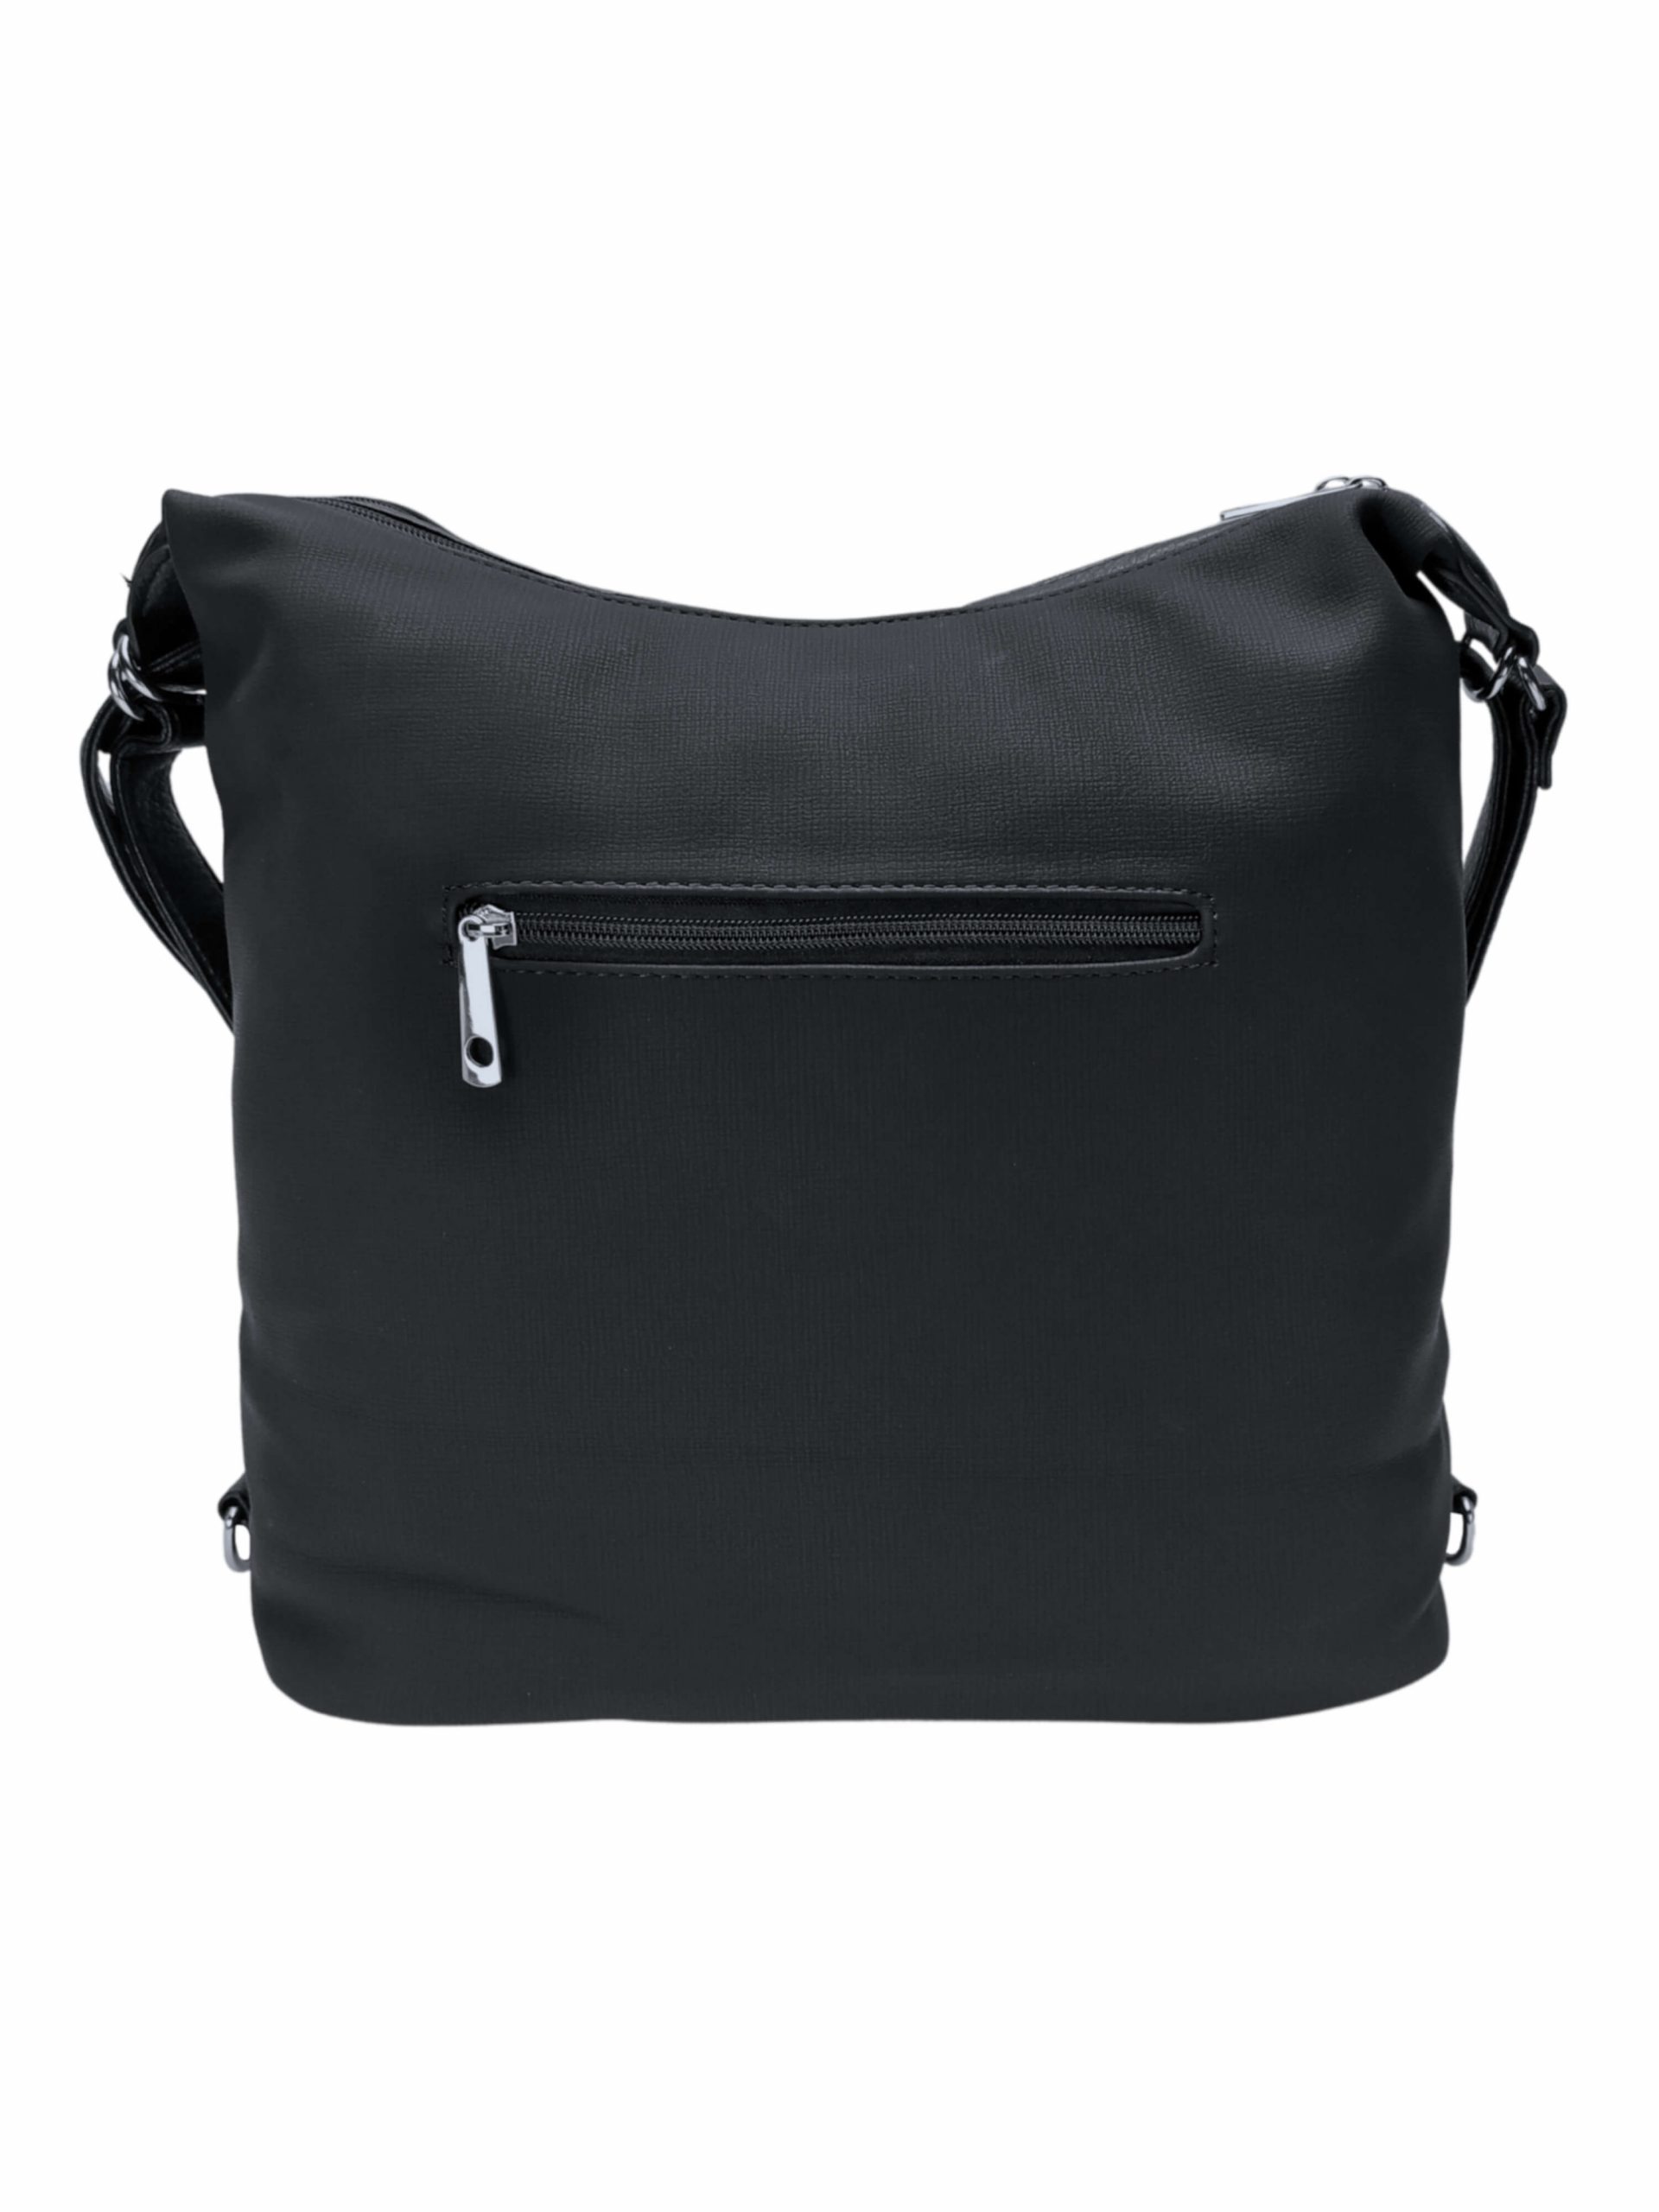 Velký černý kabelko-batoh s šikmou kapsou, Tapple, H18077N, zadní strana kabelko-batohu 2v1